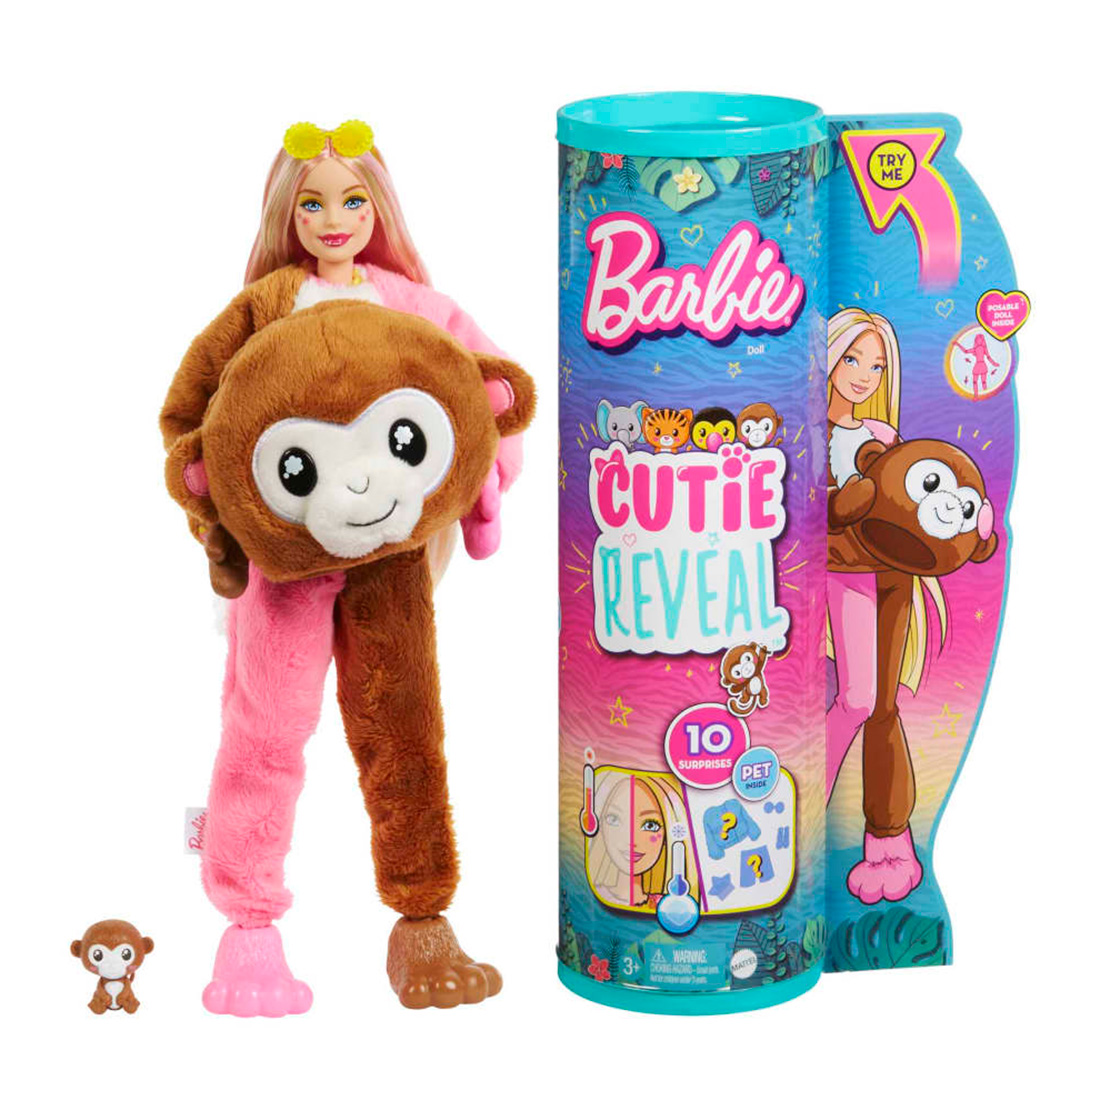 Poze Papusa surpriza, Seria Jungle, Barbie, Monkey, Cutie Reveal, HKR01